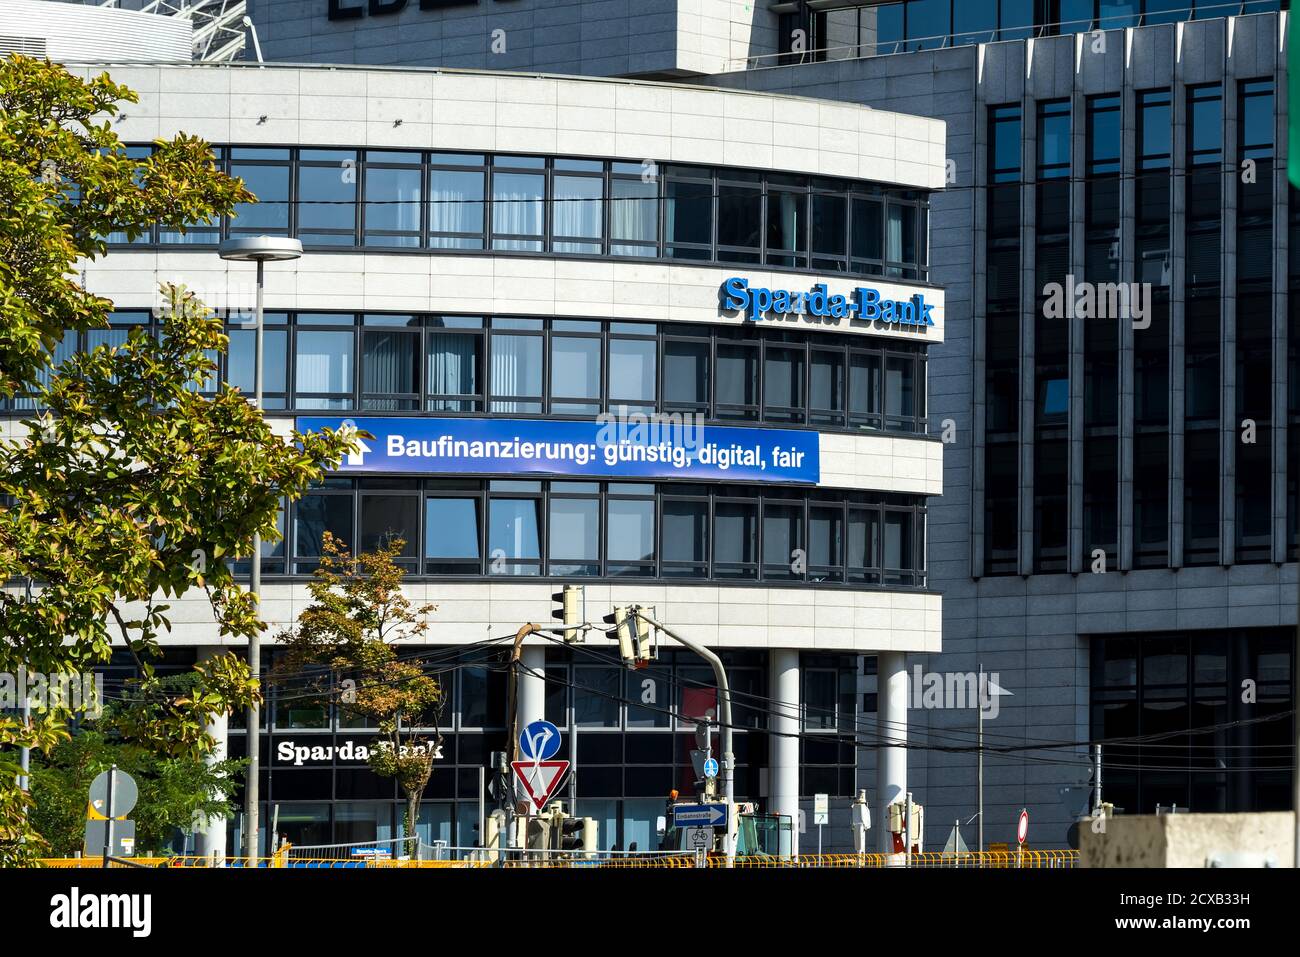 Stuttgart, Deutschland 2020: Sparda-Bank Niederlassung. Die Sparda-Bank ist eine deutsche Genossenschaftsbank, die sich traditionell auf das Private Banking konzentriert. Stockfoto